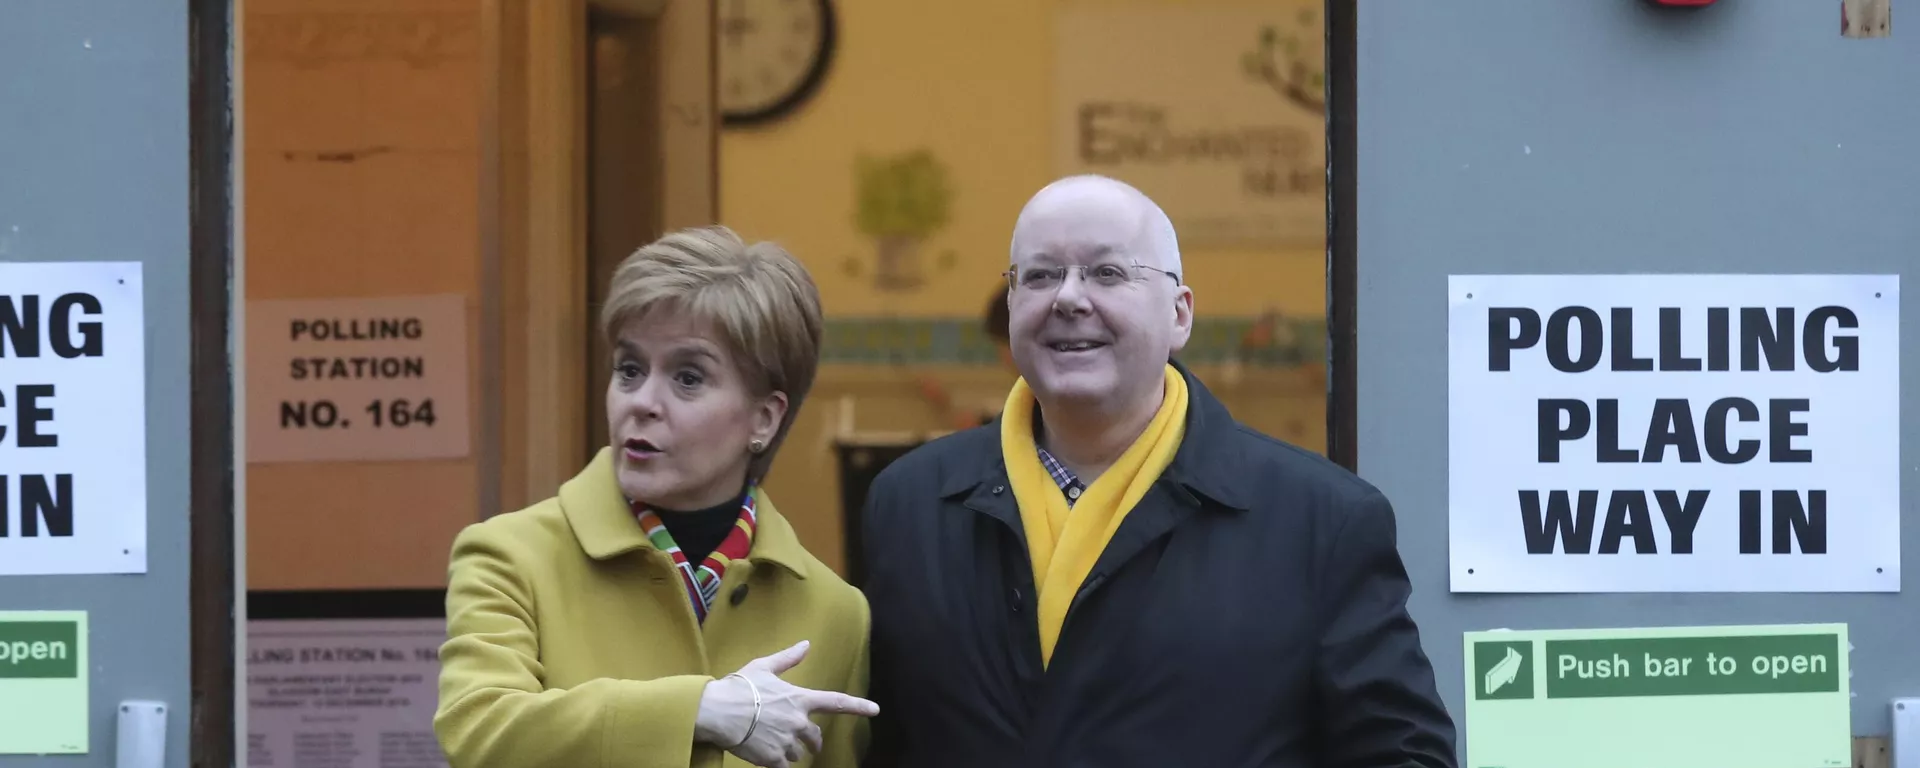 Eski İskoç Ulusal Partisi (SNP) lideri ve İskoçya Başbakanı Nicola Sturgeon'un eşi Peter Murrell'in 600 bin sterlinlik dolandırıcılık soruşturmasında tutuklandığı bildirildi. - Sputnik Türkiye, 1920, 05.04.2023